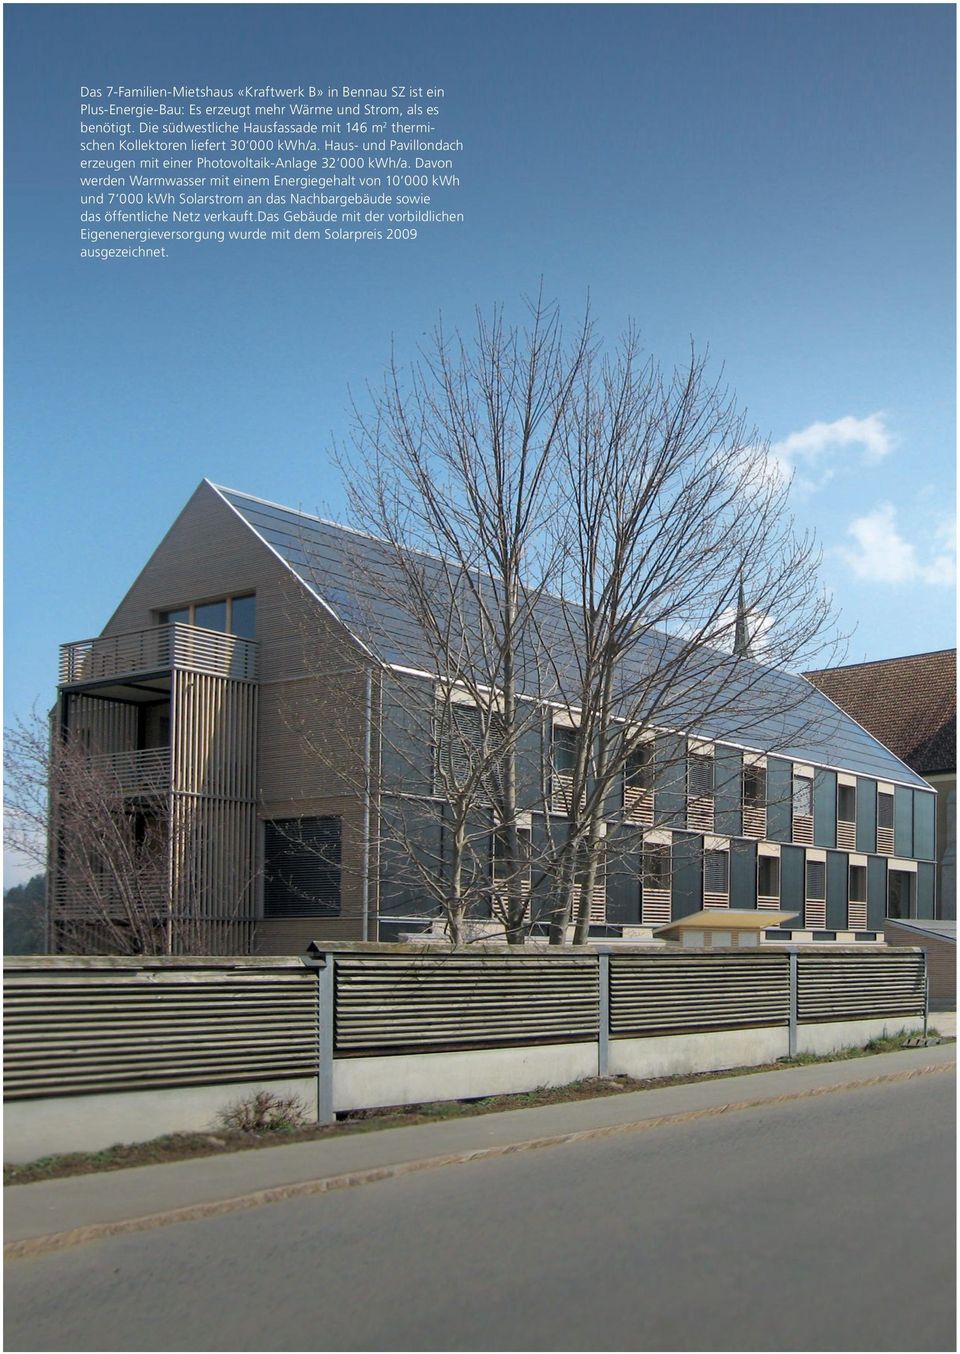 Haus- und Pavillondach erzeugen mit einer Photovoltaik-Anlage 32 000 kwh/a.